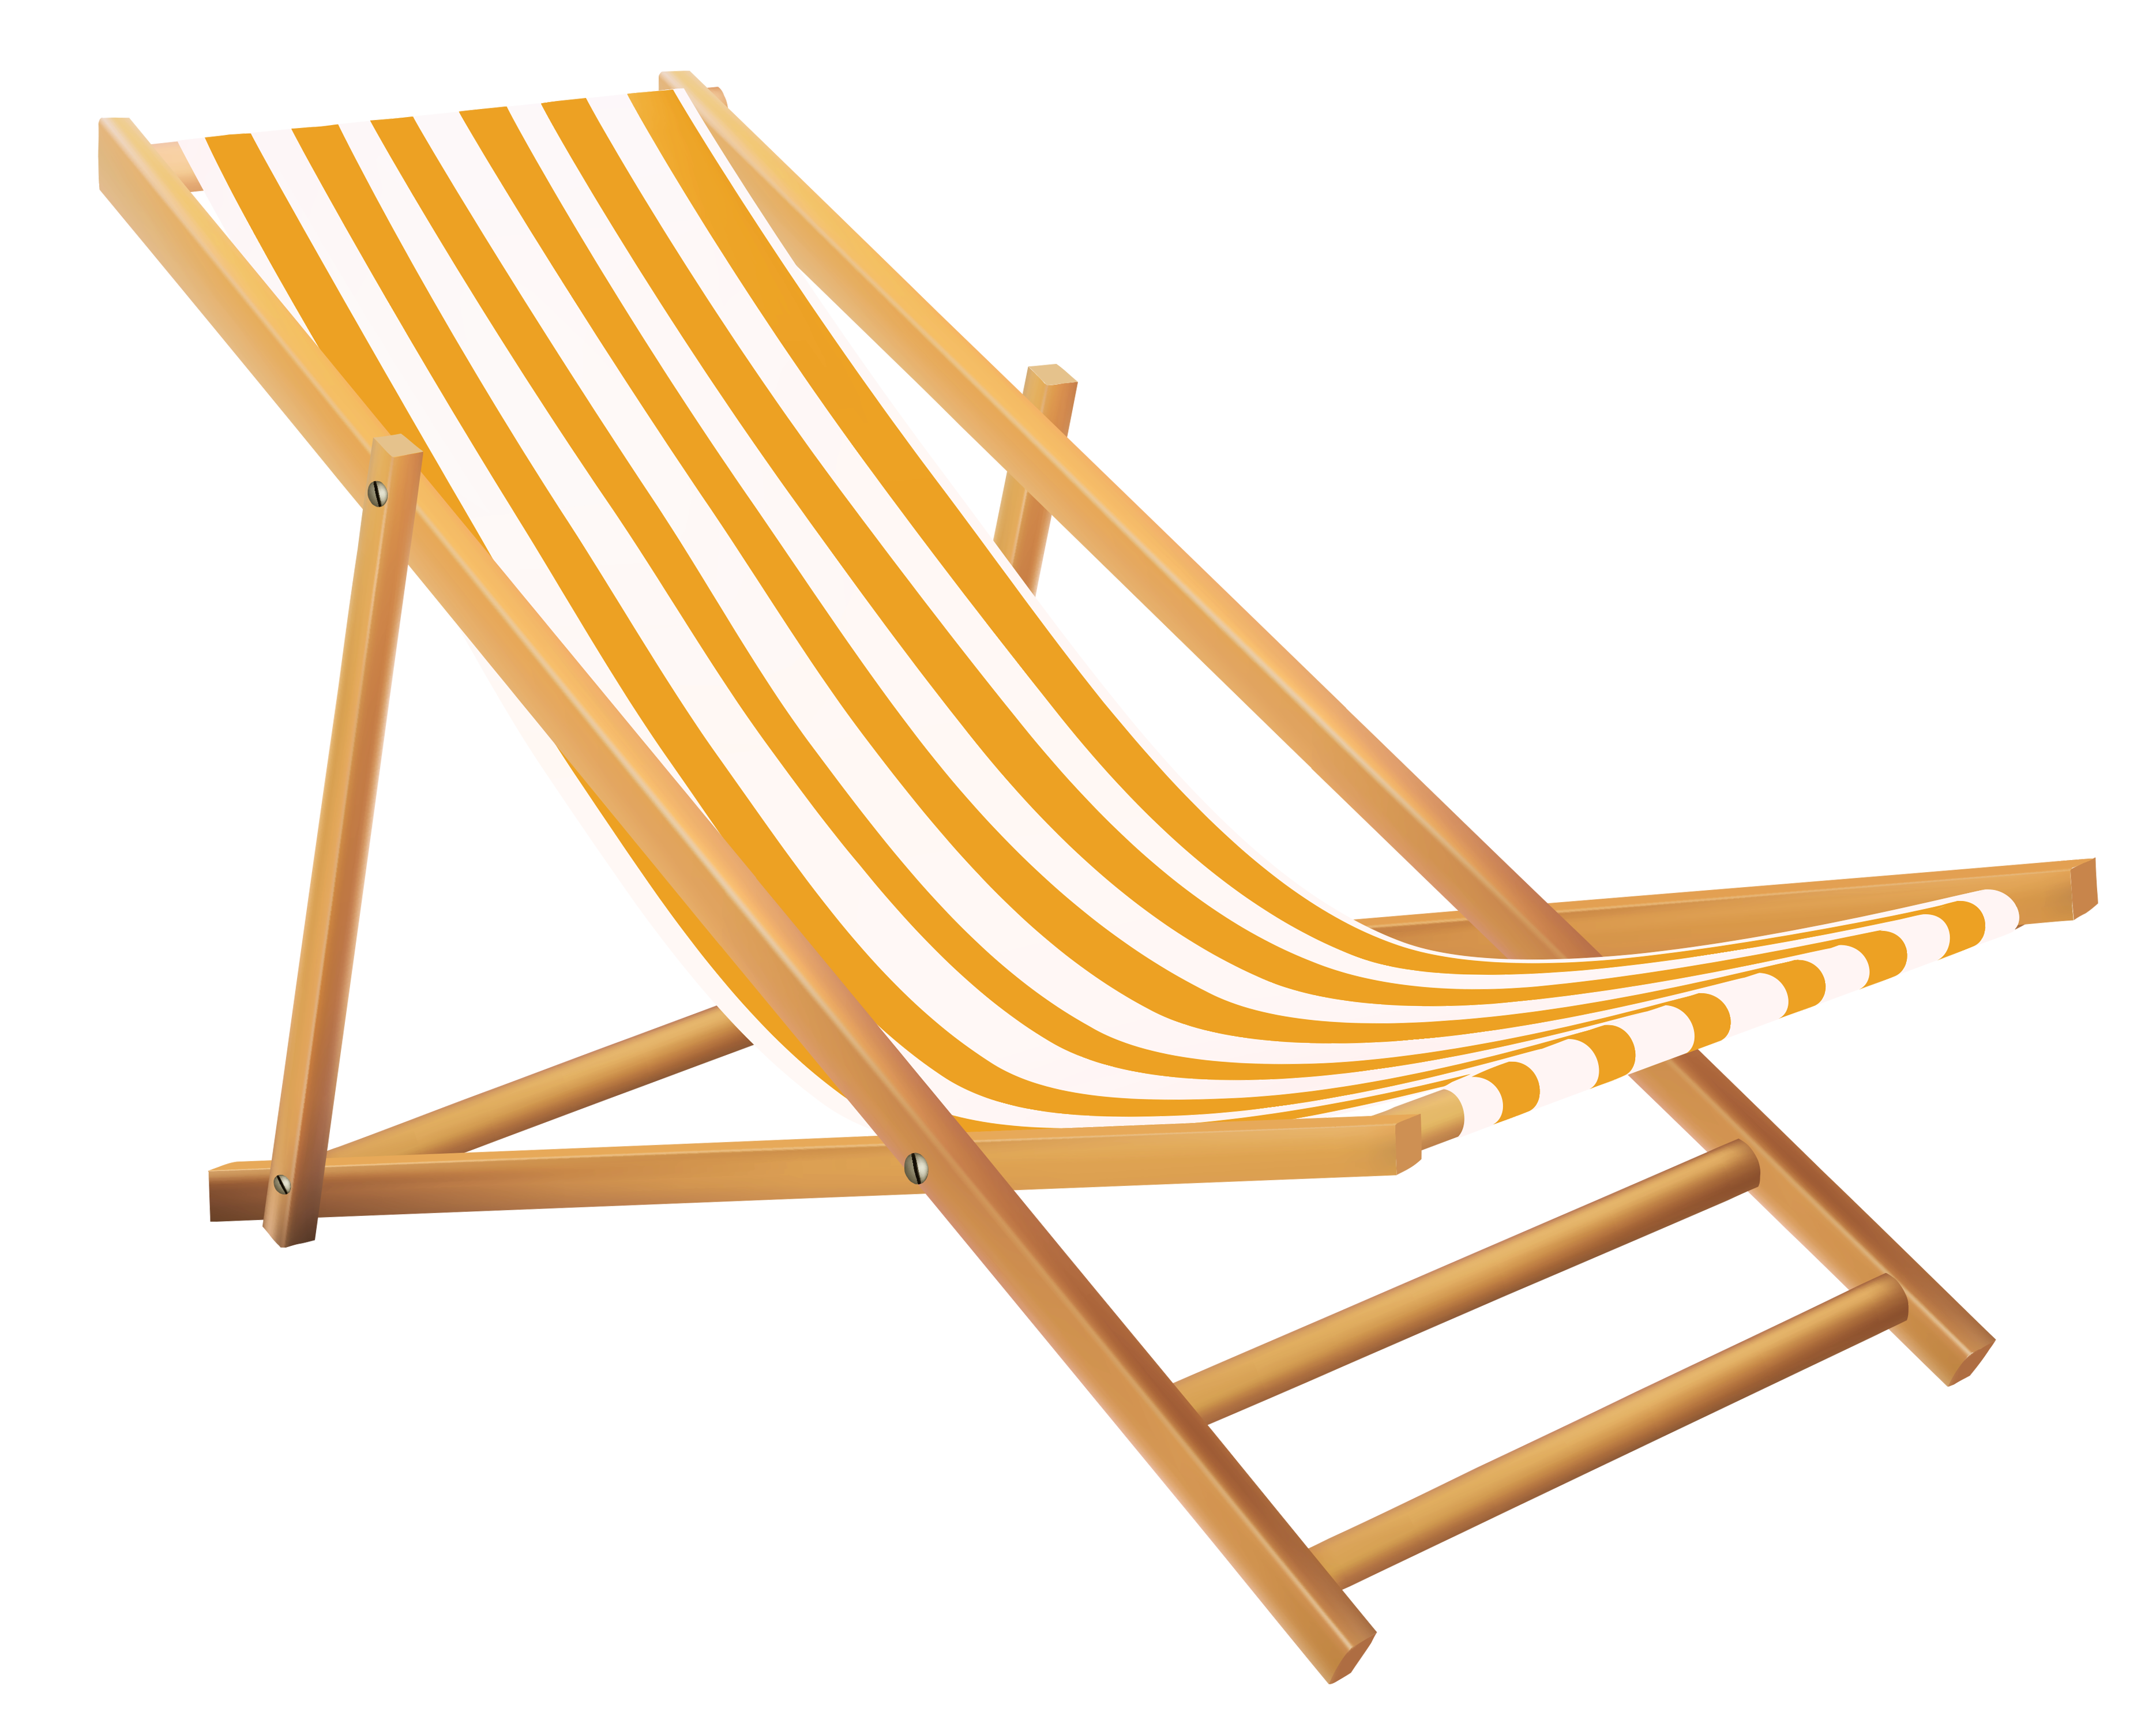 Eames Lounge Chair Beach Clip art - Transparent Beach Lounge Chair ...